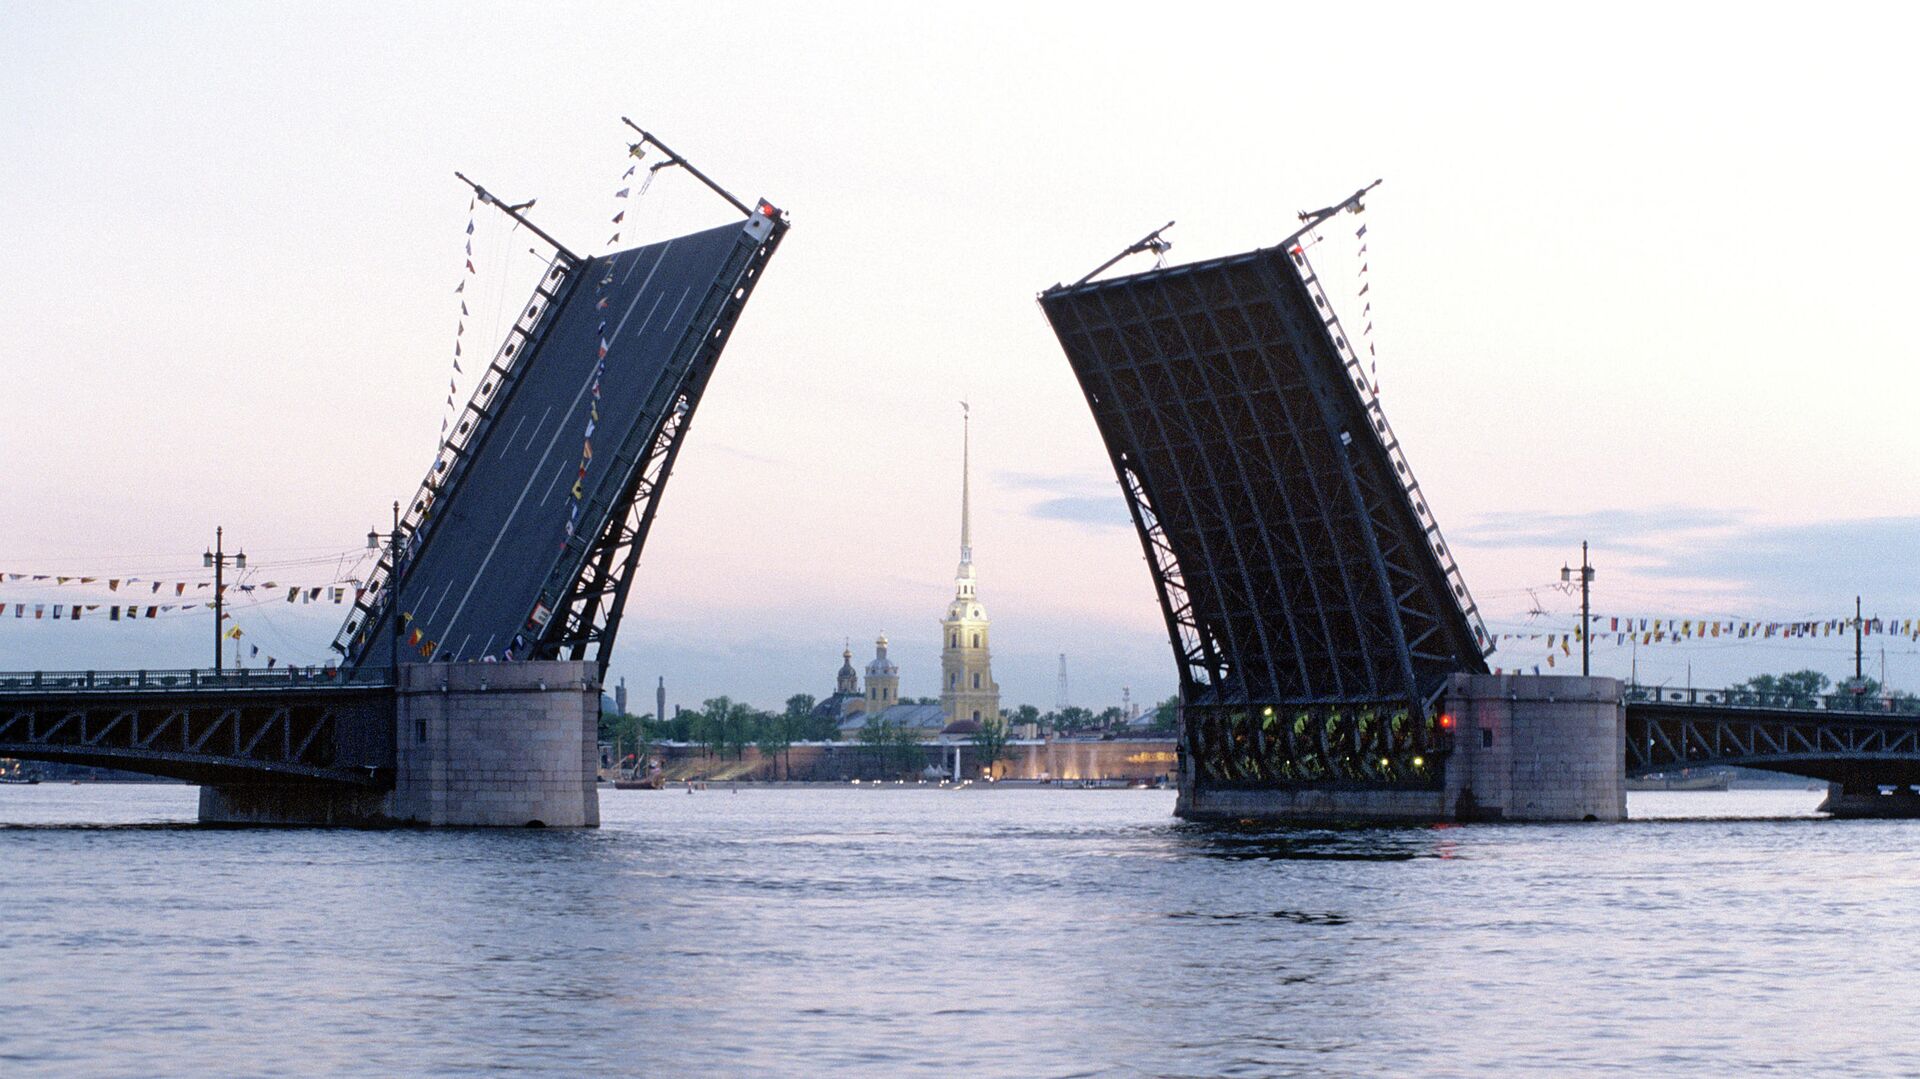 Дворцовый мост в Санкт-Петербурге - РИА Новости, 1920, 11.10.2020